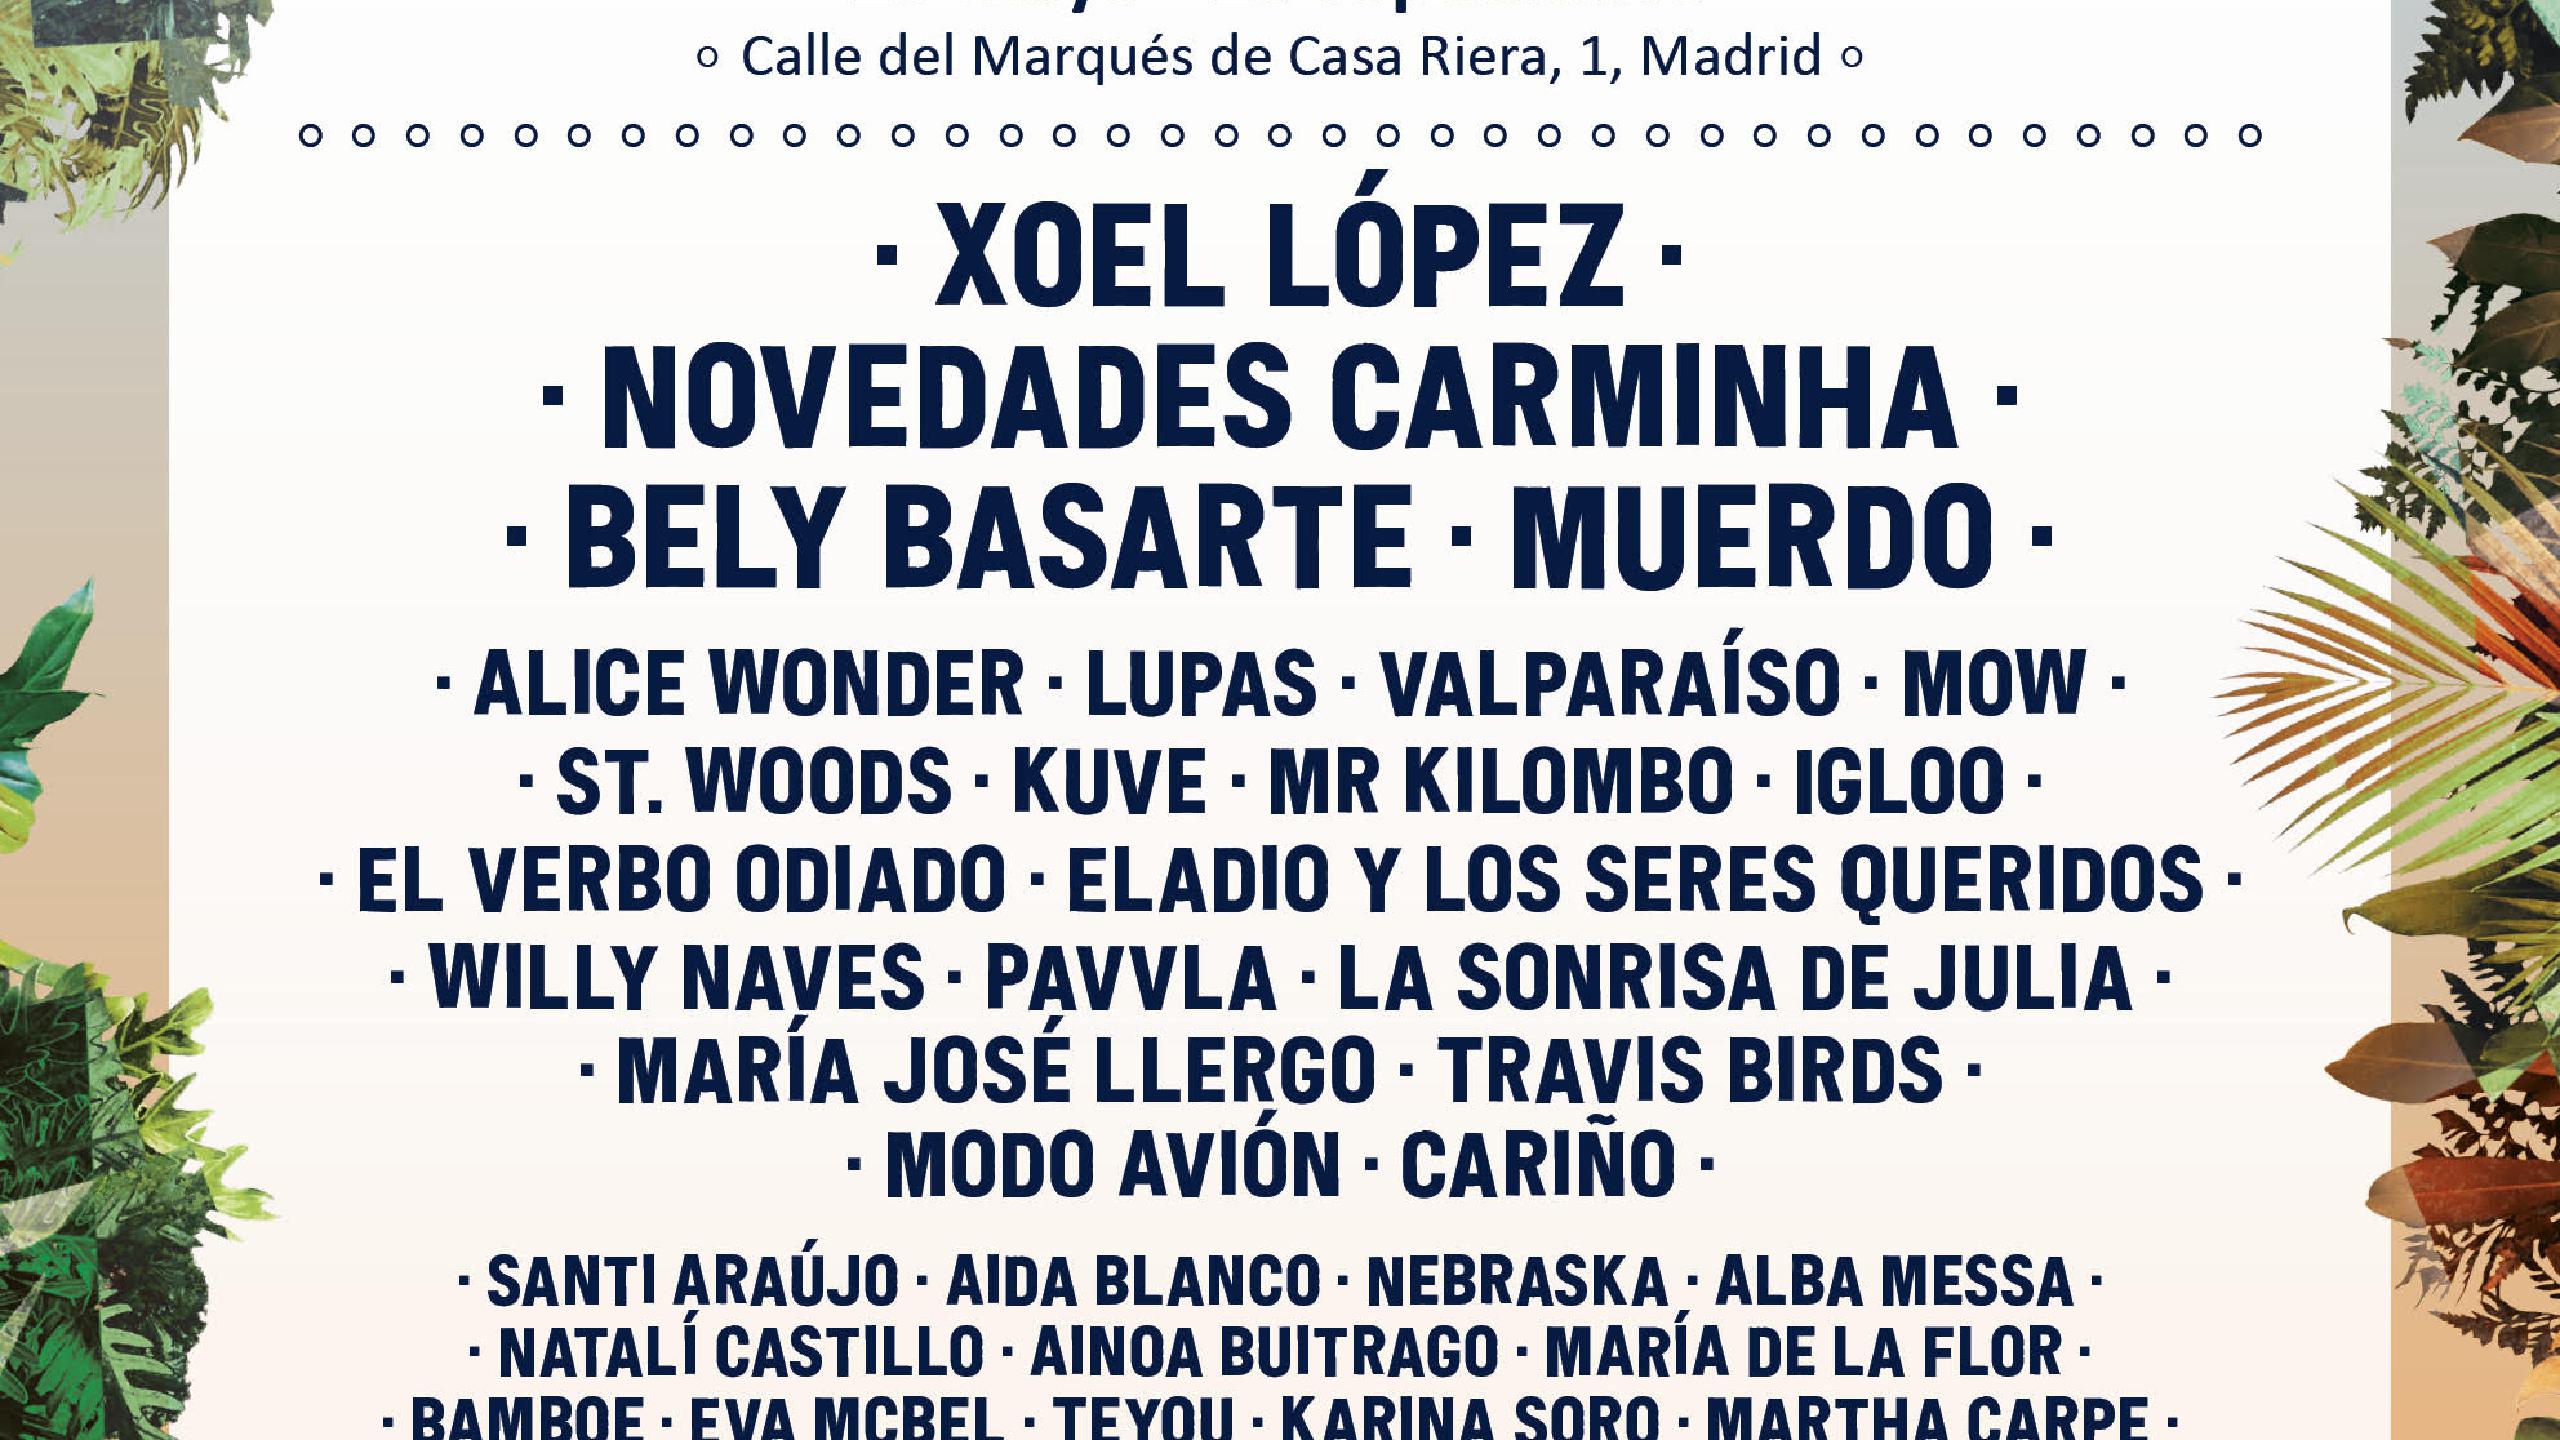 Casa Corona Madrid Tickets And Concerts 2020 2021 Wegow